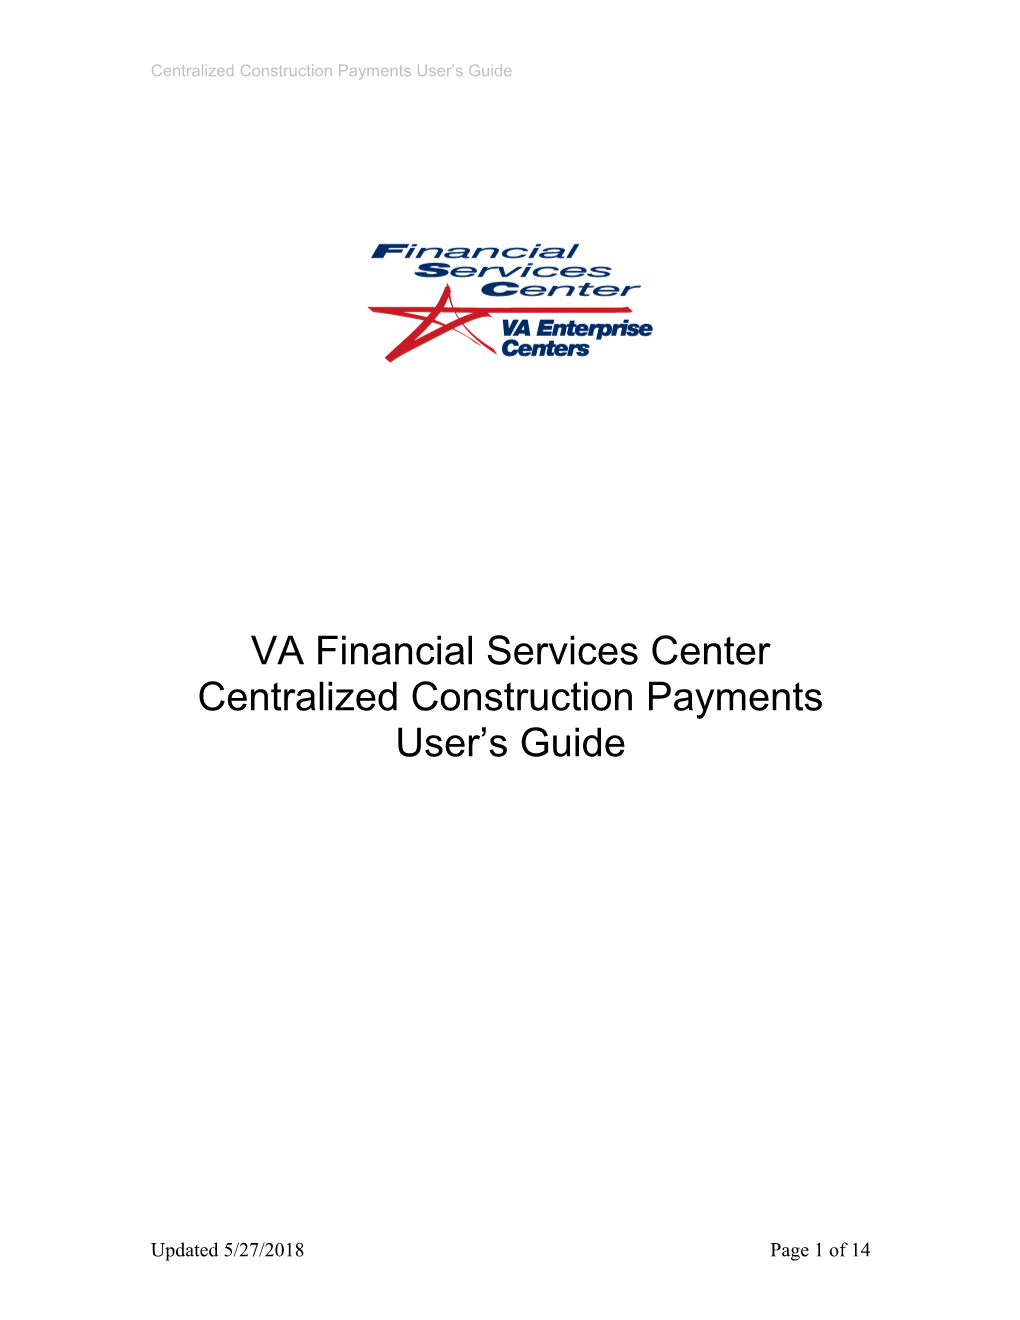 VA Financial Services Center